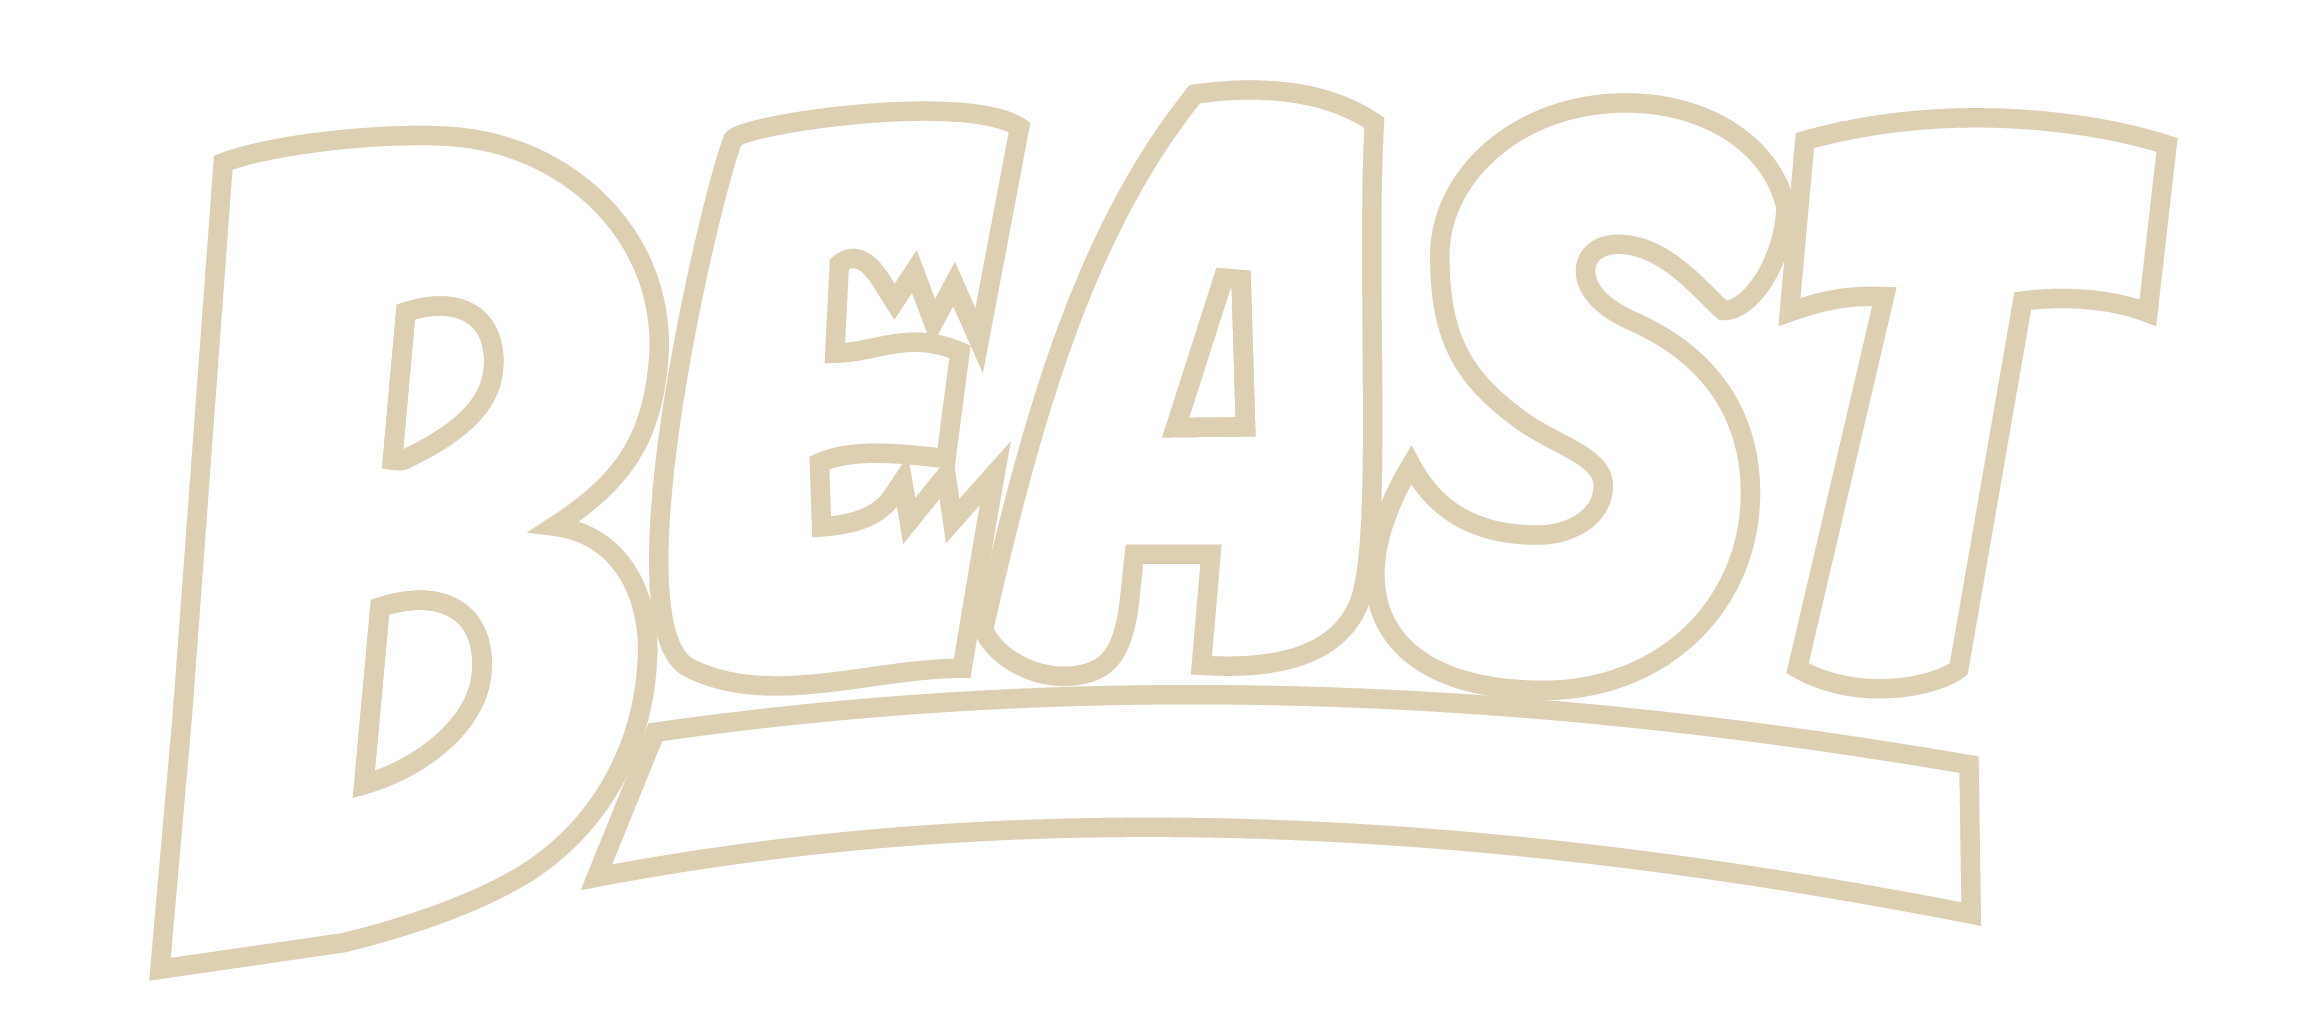 BEAST_Logo_Oatmeal-4.png